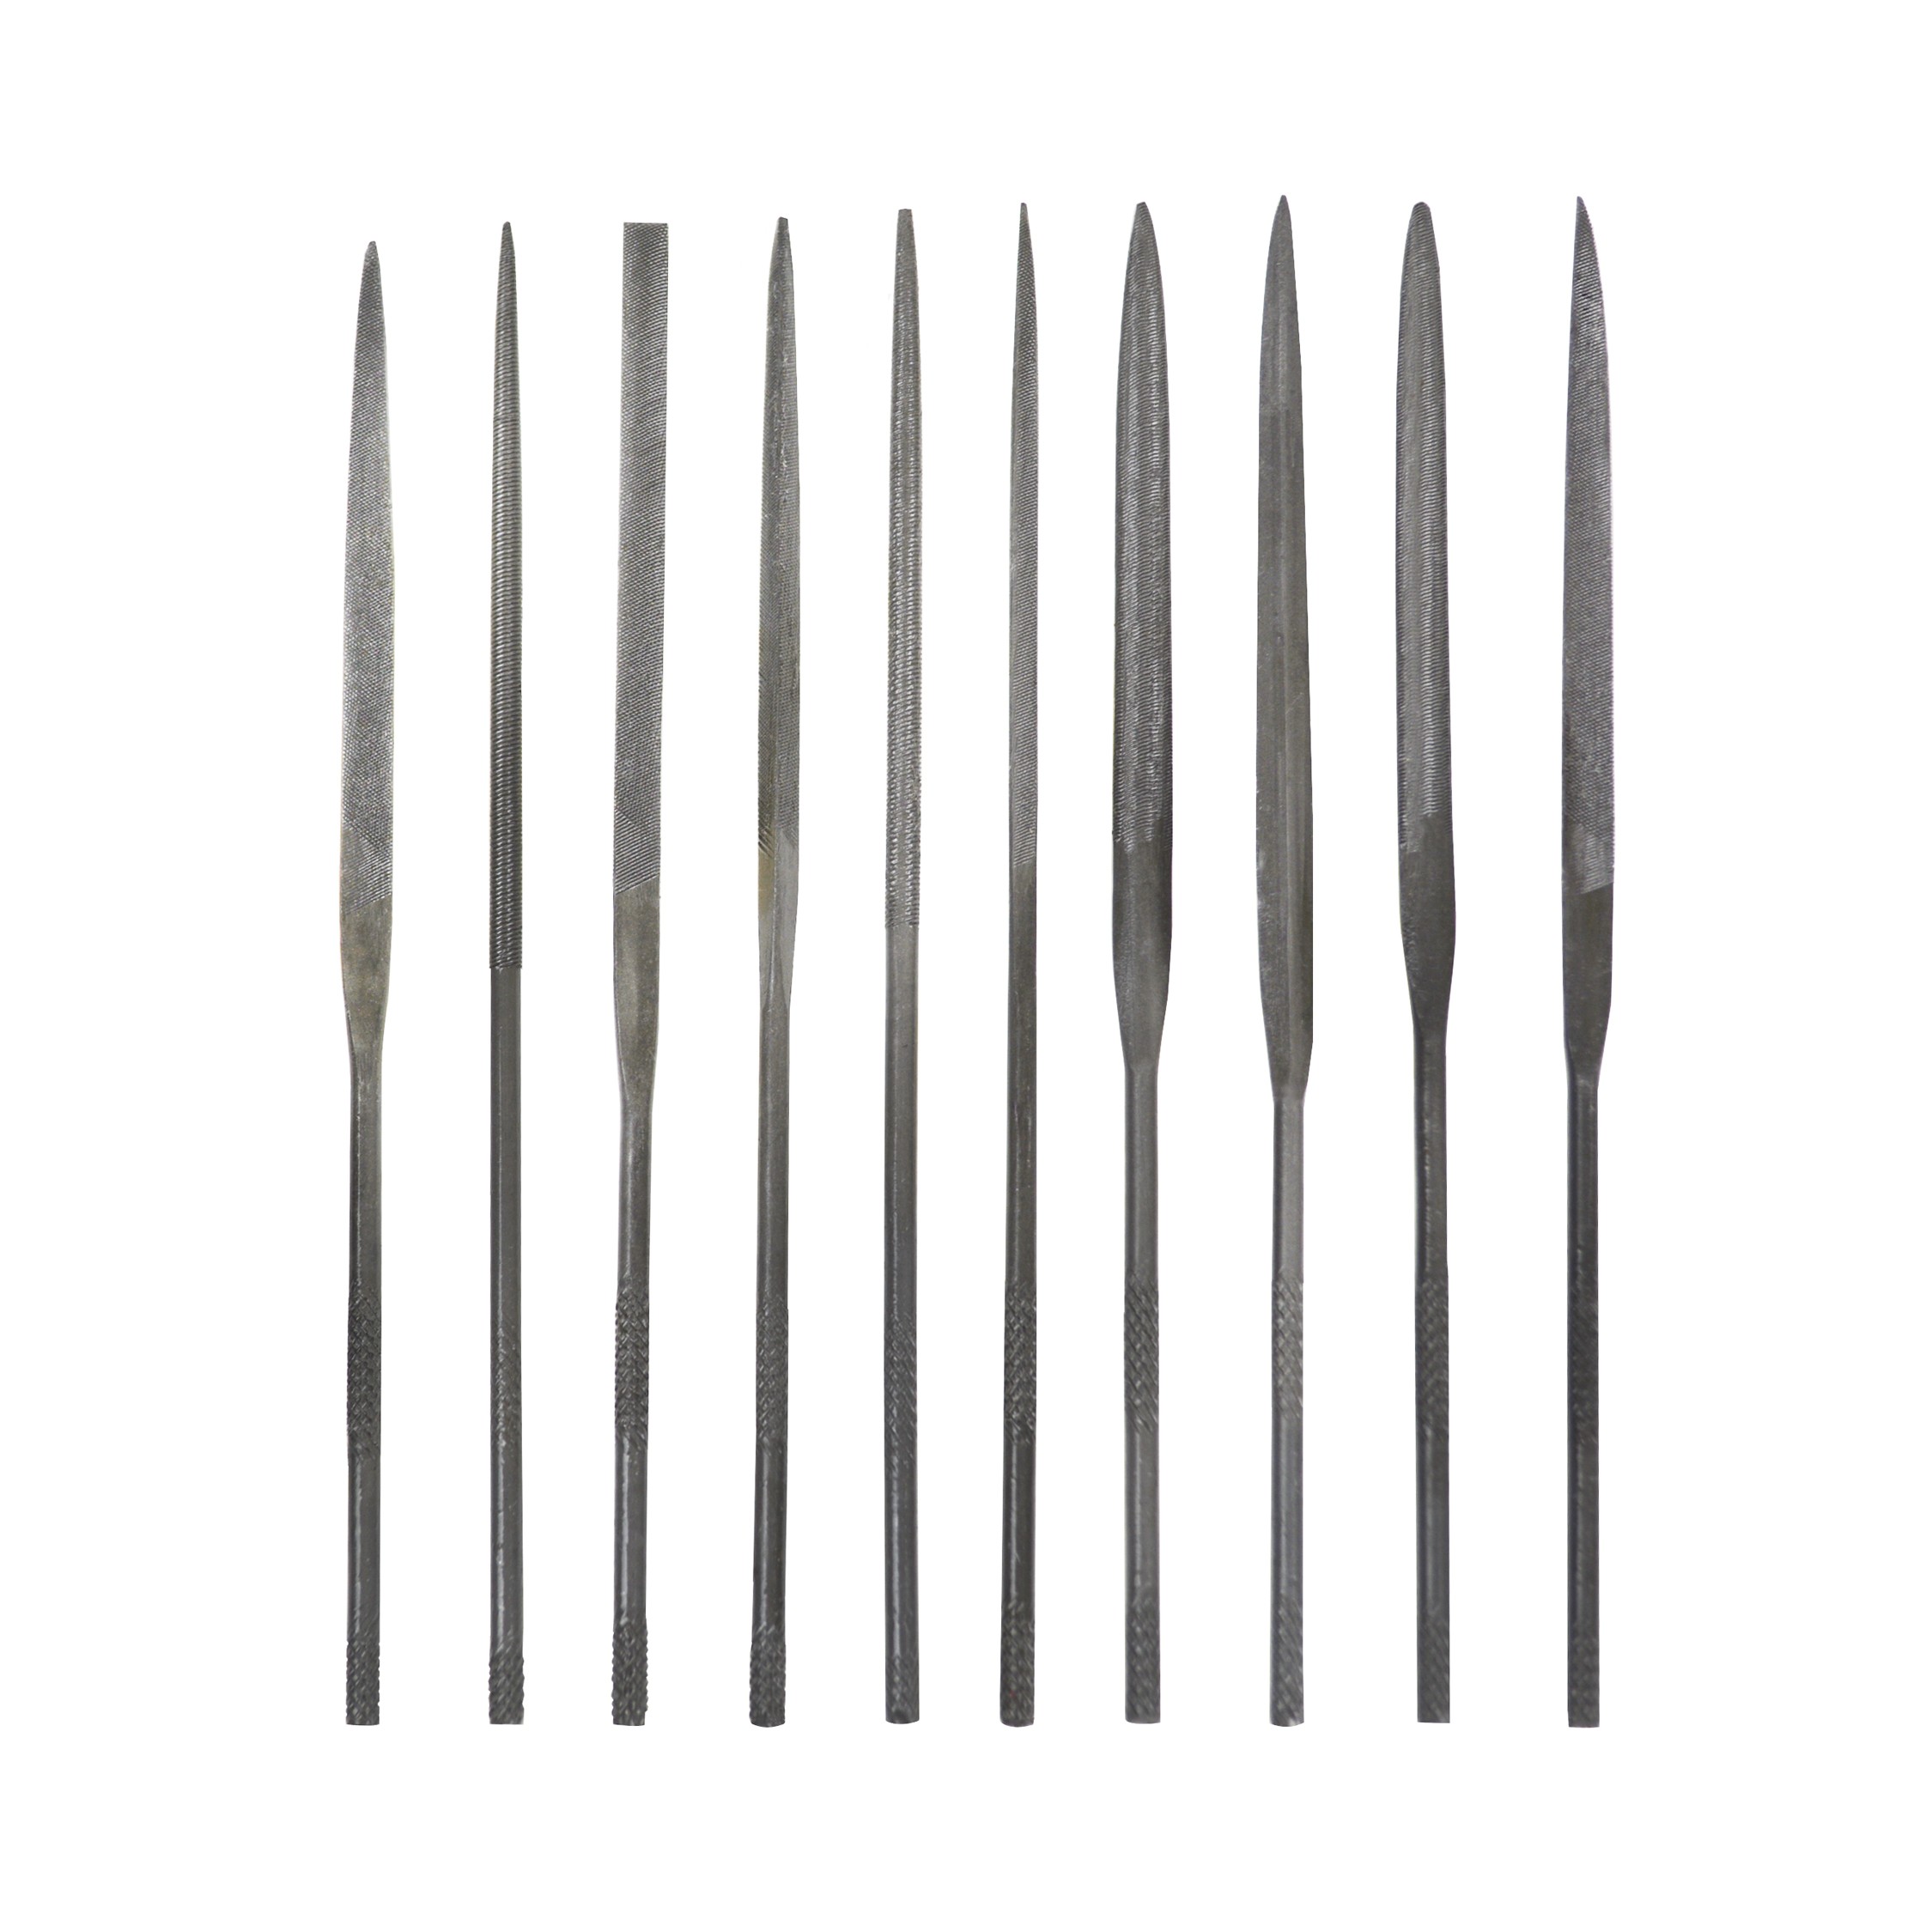 Set of 10 File Needles 14 cm w/ Plastic Pouch